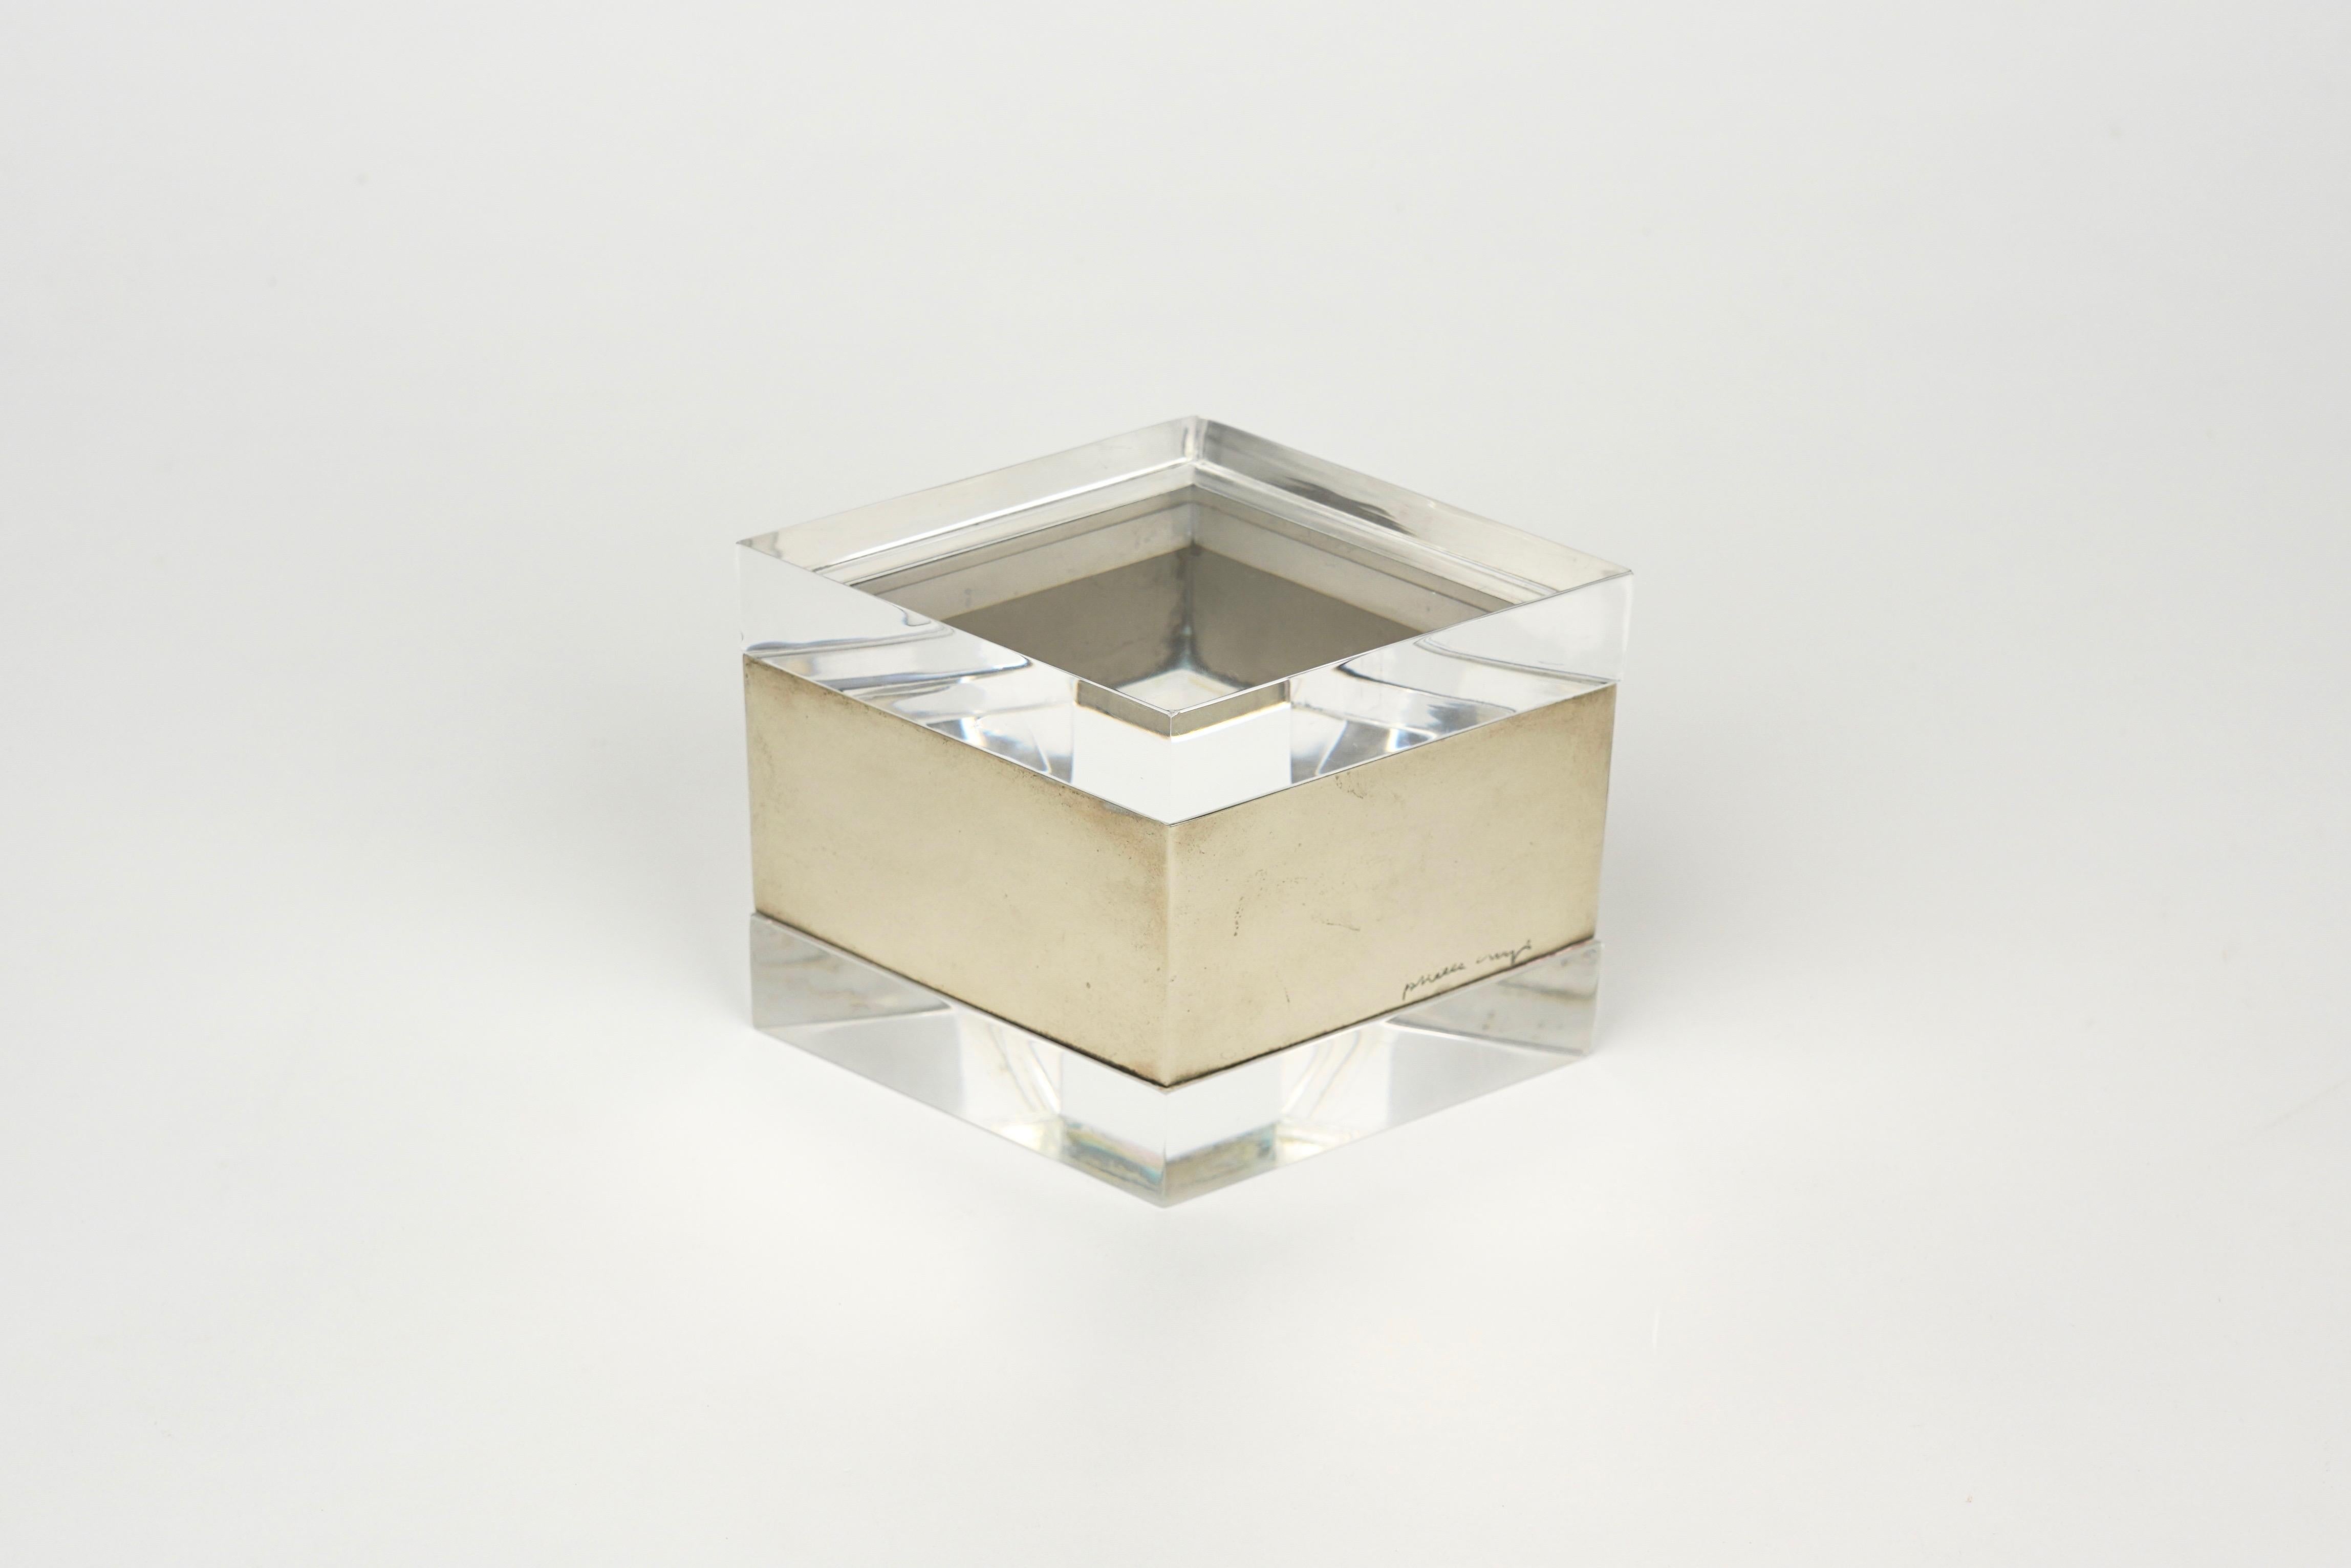 Seltene Box aus Lucit und Chrom in Form eines Rhombus, signiert von der italienischen Designerin Gabriella Crespi, wie auf den Fotos zu sehen. Hergestellt in Italien in den 1970er Jahren. 

Bedingungen sind gut in Anbetracht des Alters der Box,